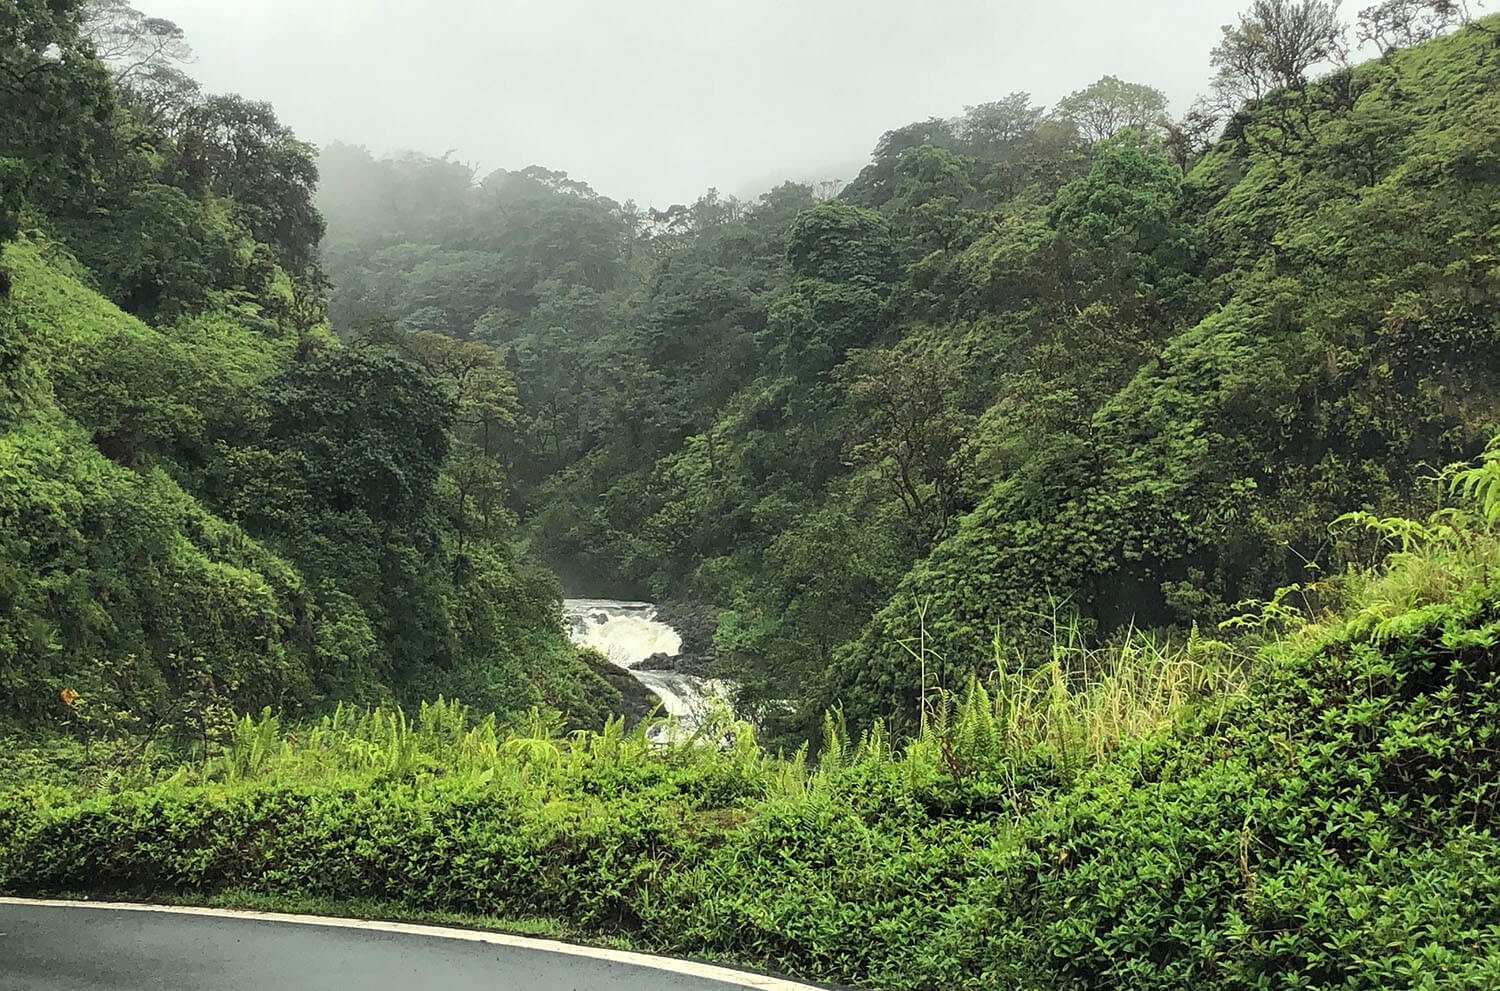 The Road to Hana Maui Hawaii